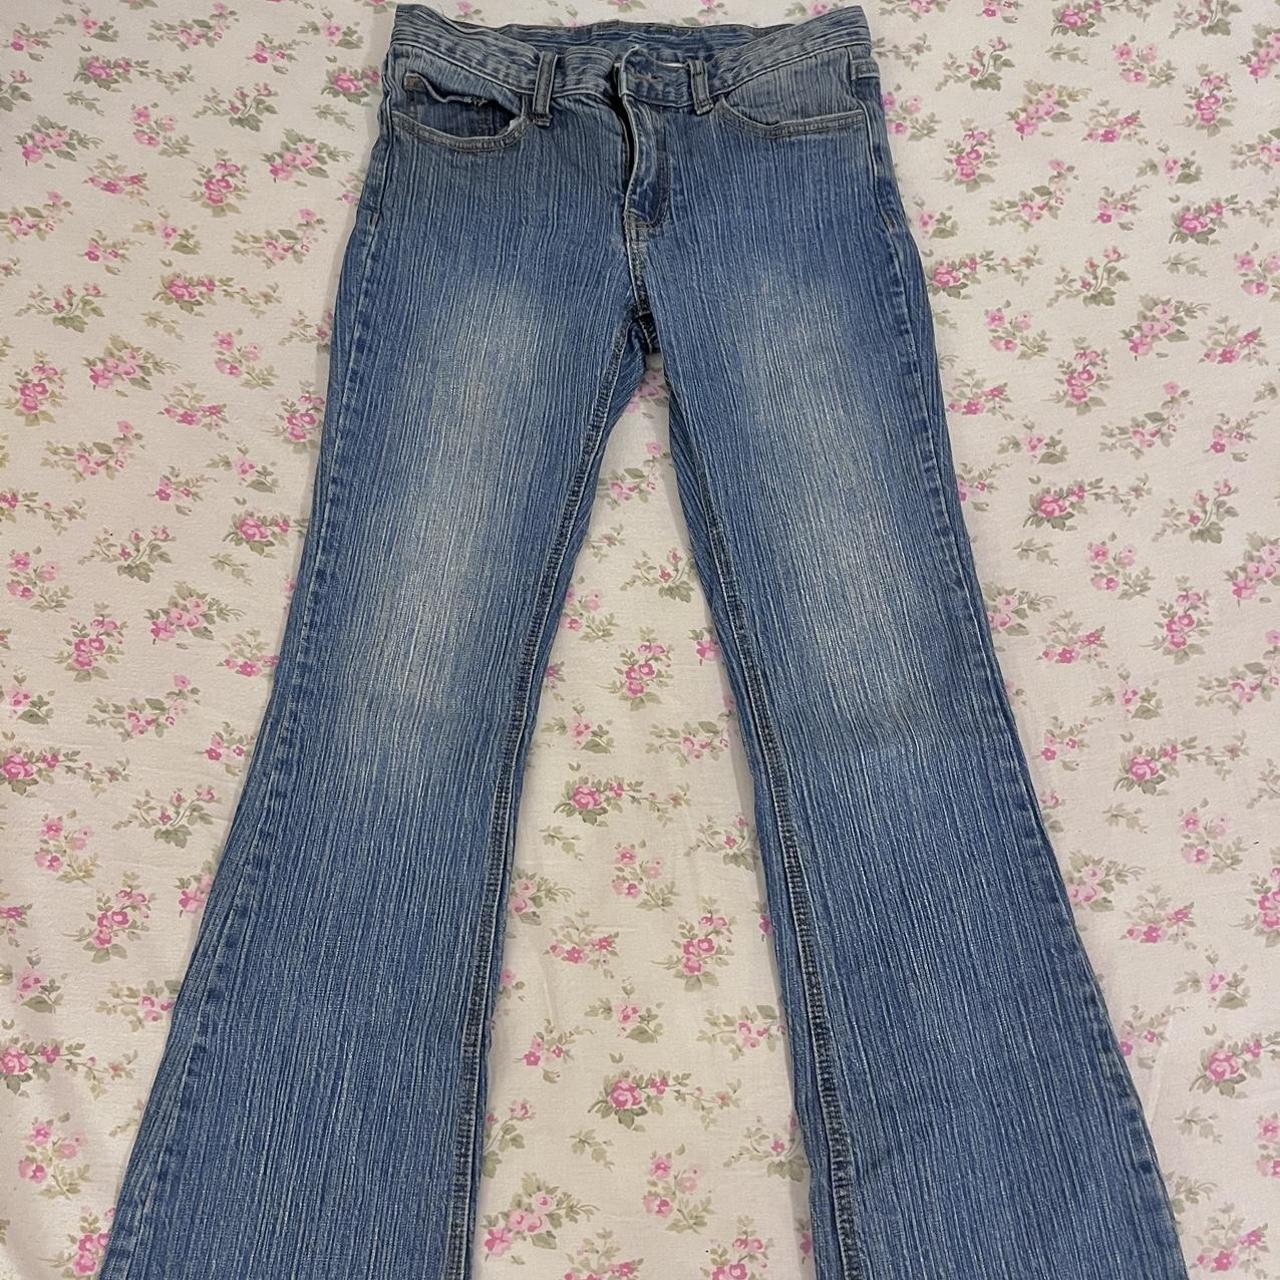 Brandy Melville Brielle 90s jeans - BNWOT Love... - Depop